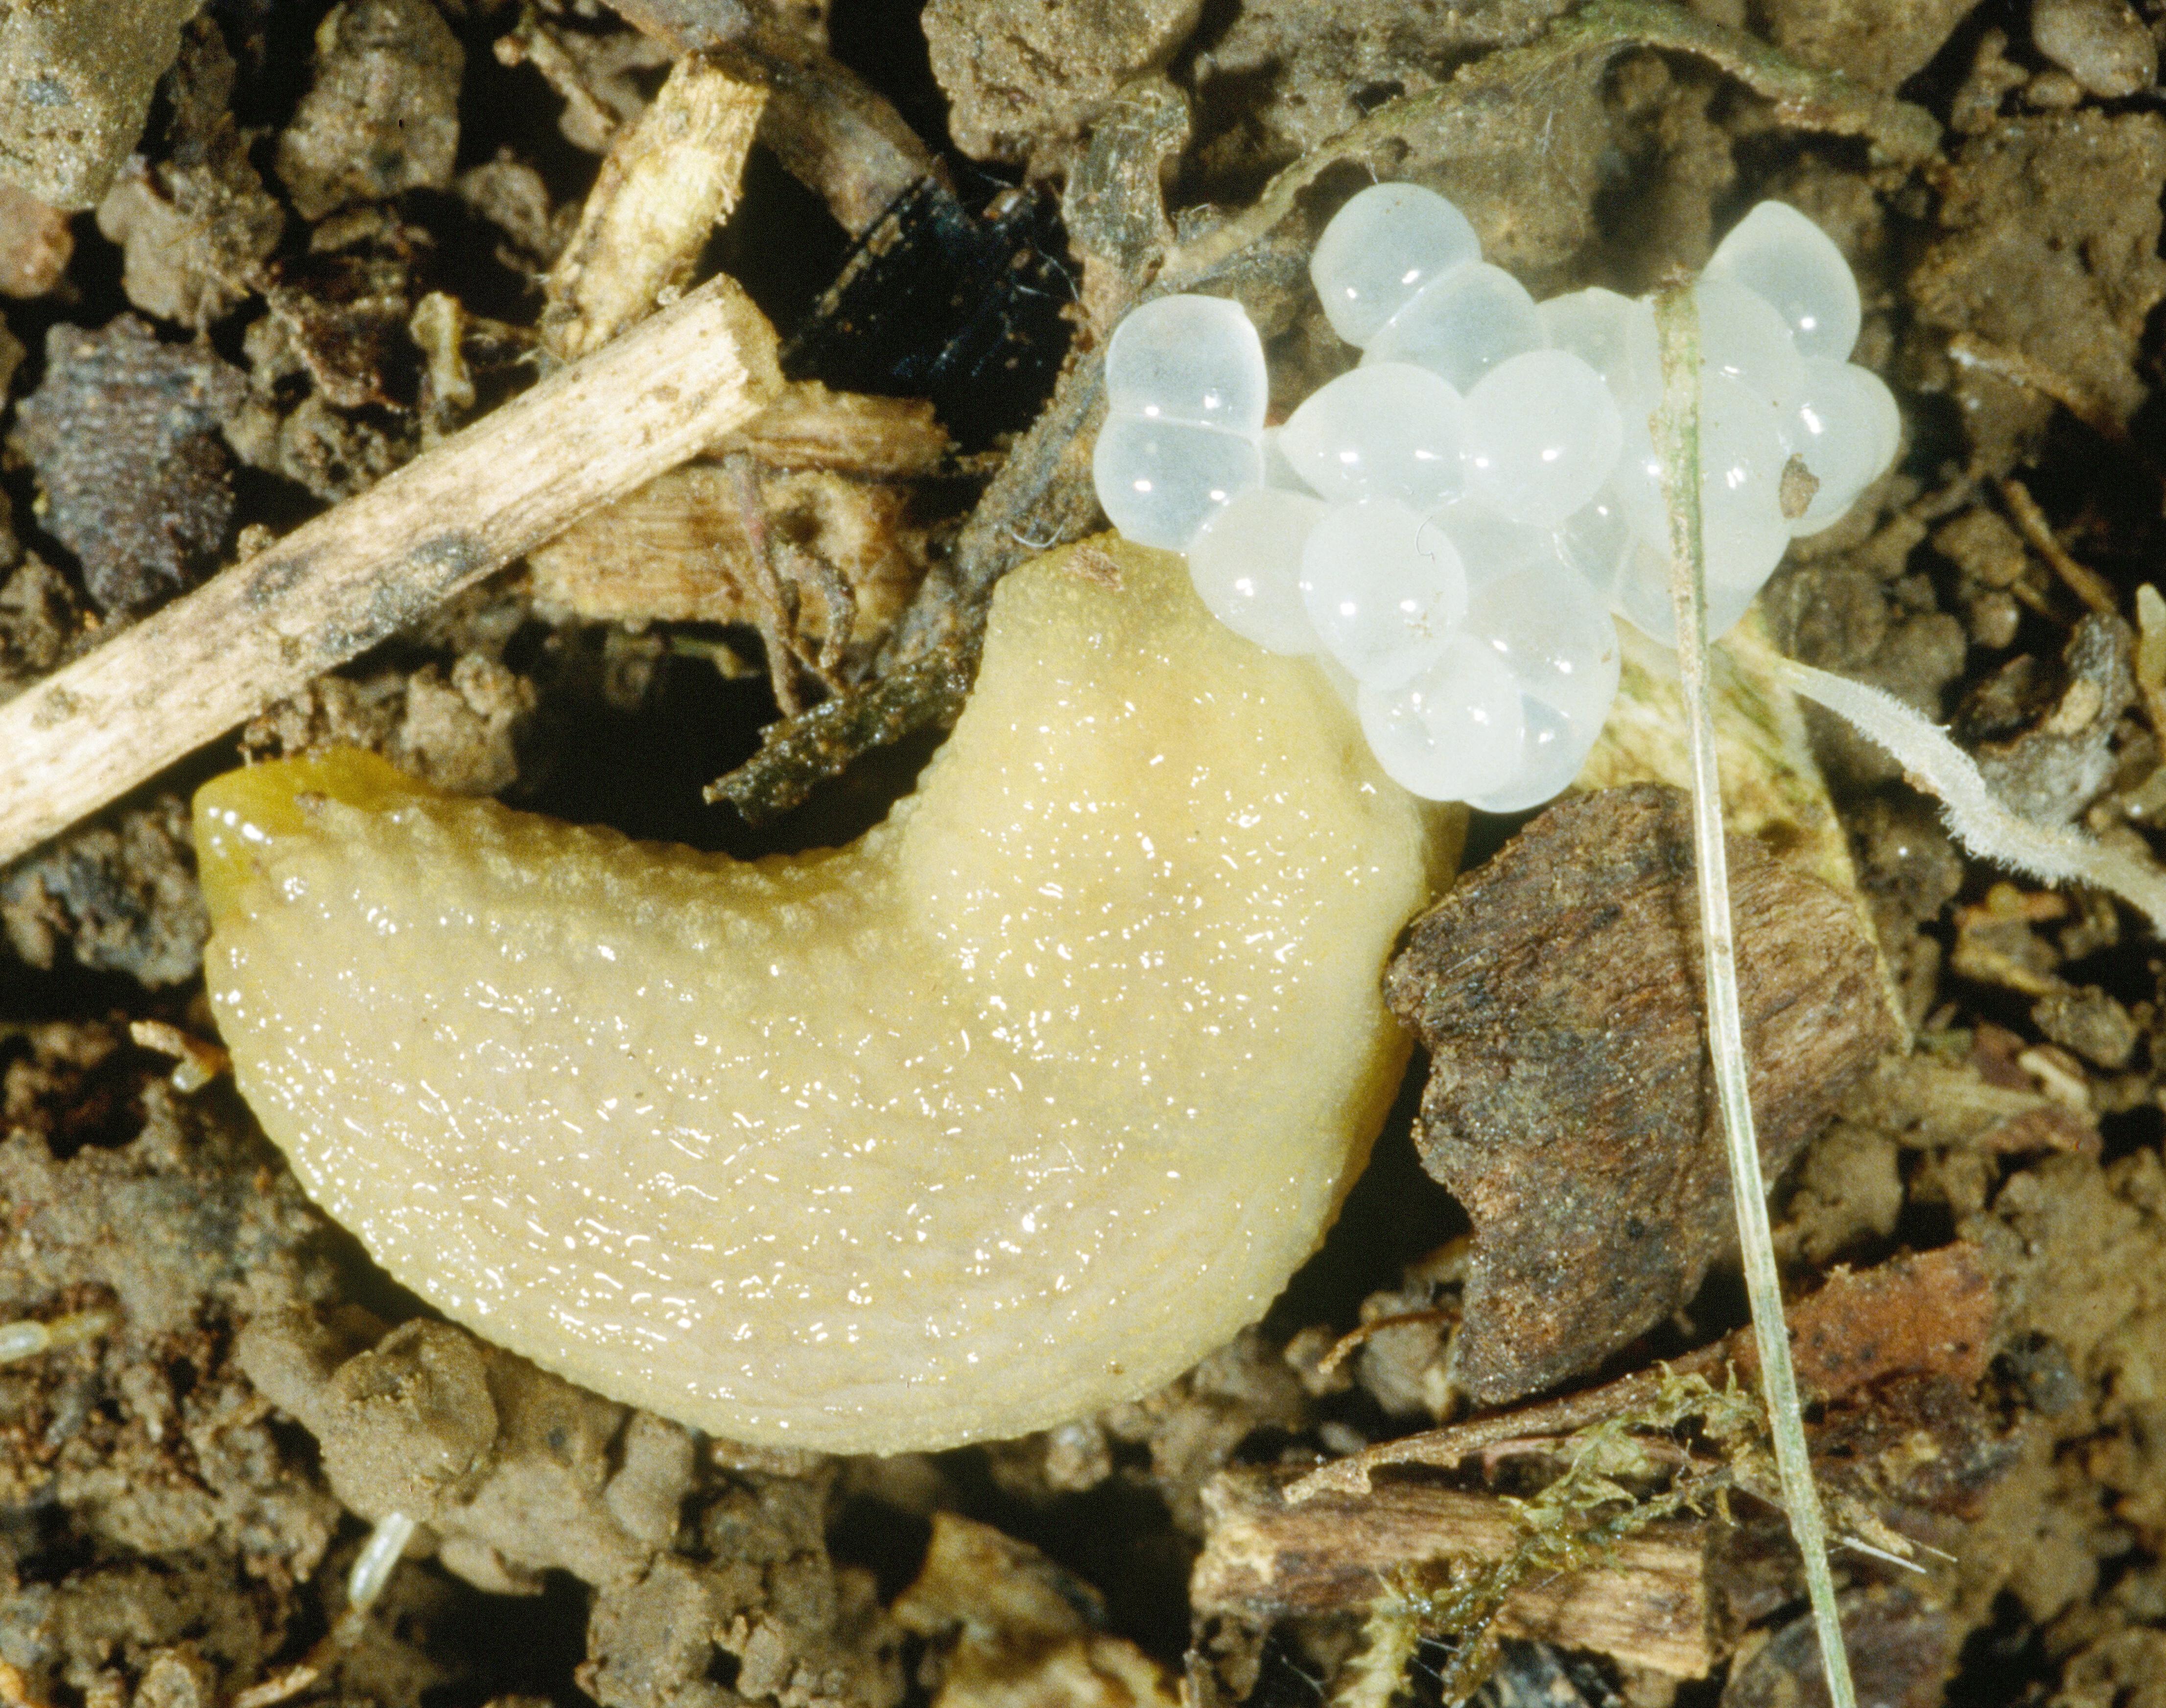 Adult slug with eggs (Bessin, UKY)